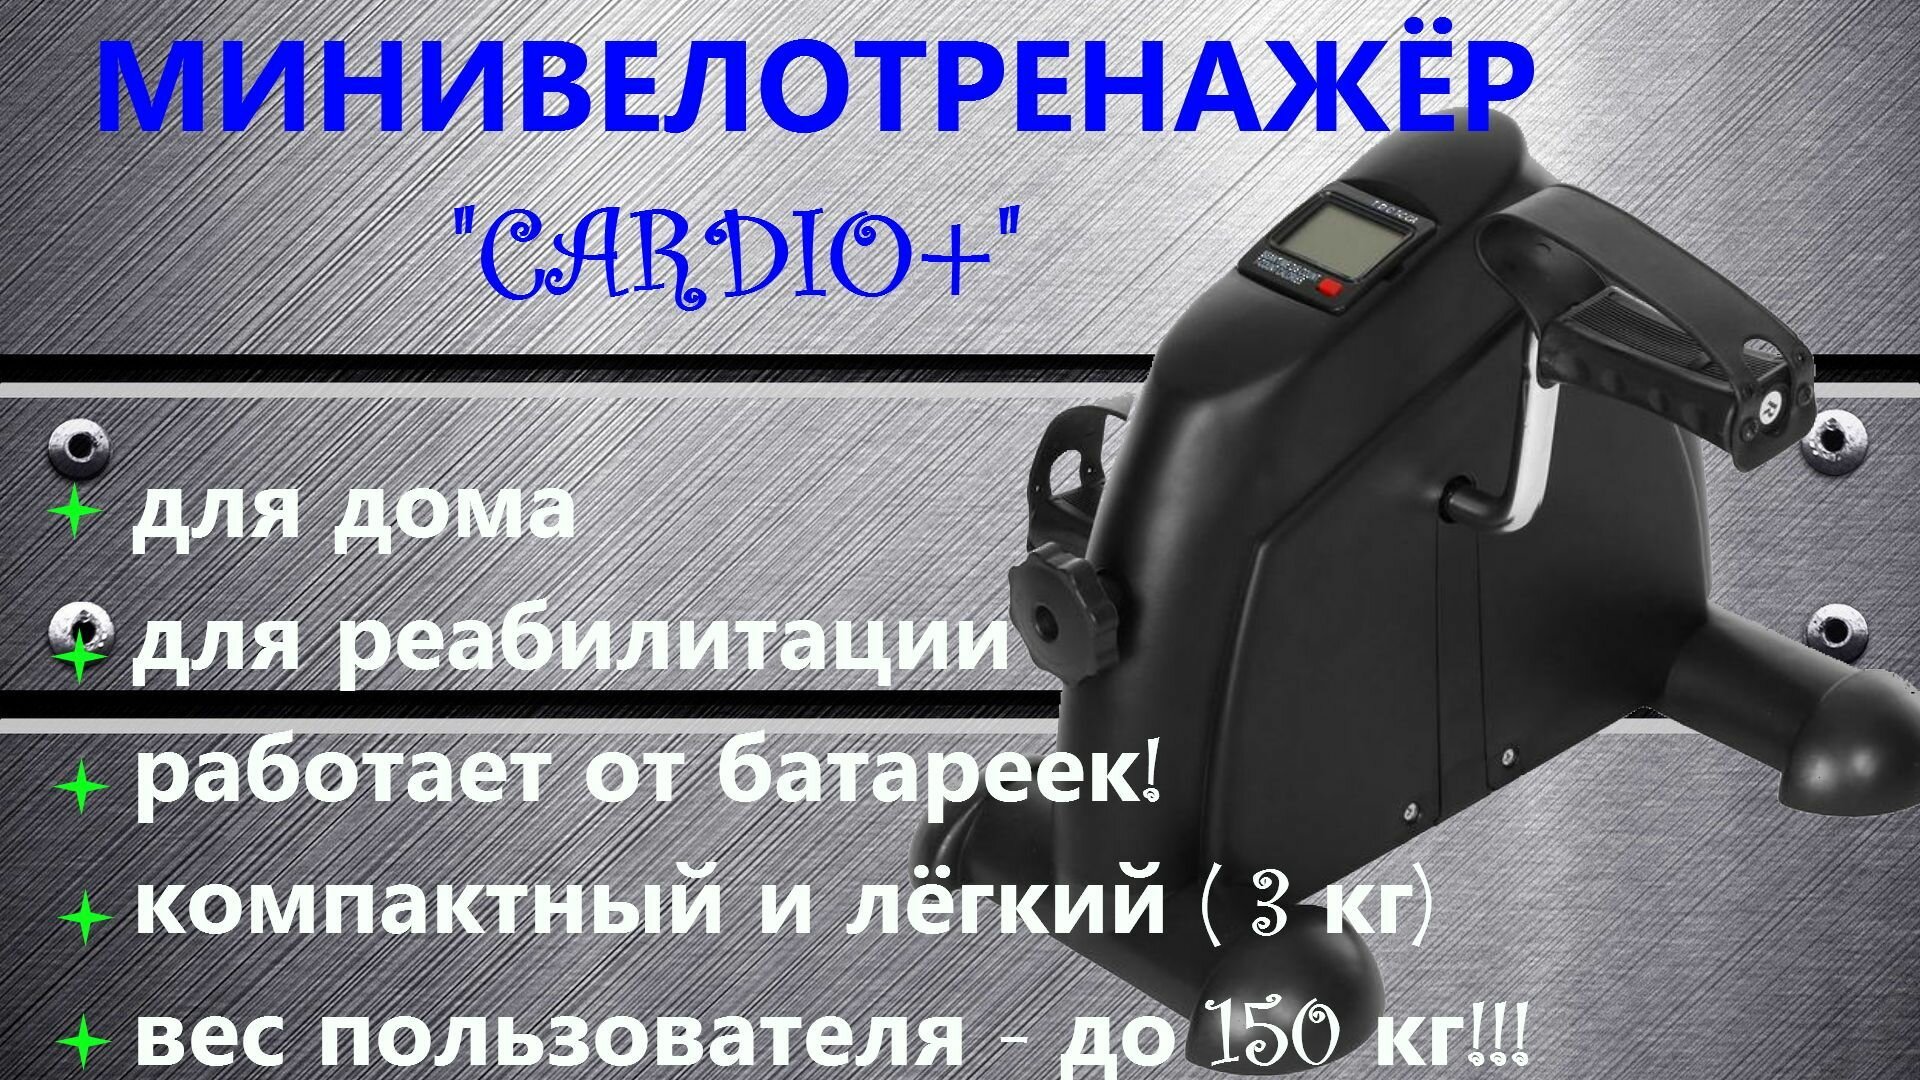 Велотренажер "Cardio+" (с дисплеем) напольный для дома, мини, домашний, кардио, механический, портативный для рук и ног, минивелотренажер для похудения и реабилитации